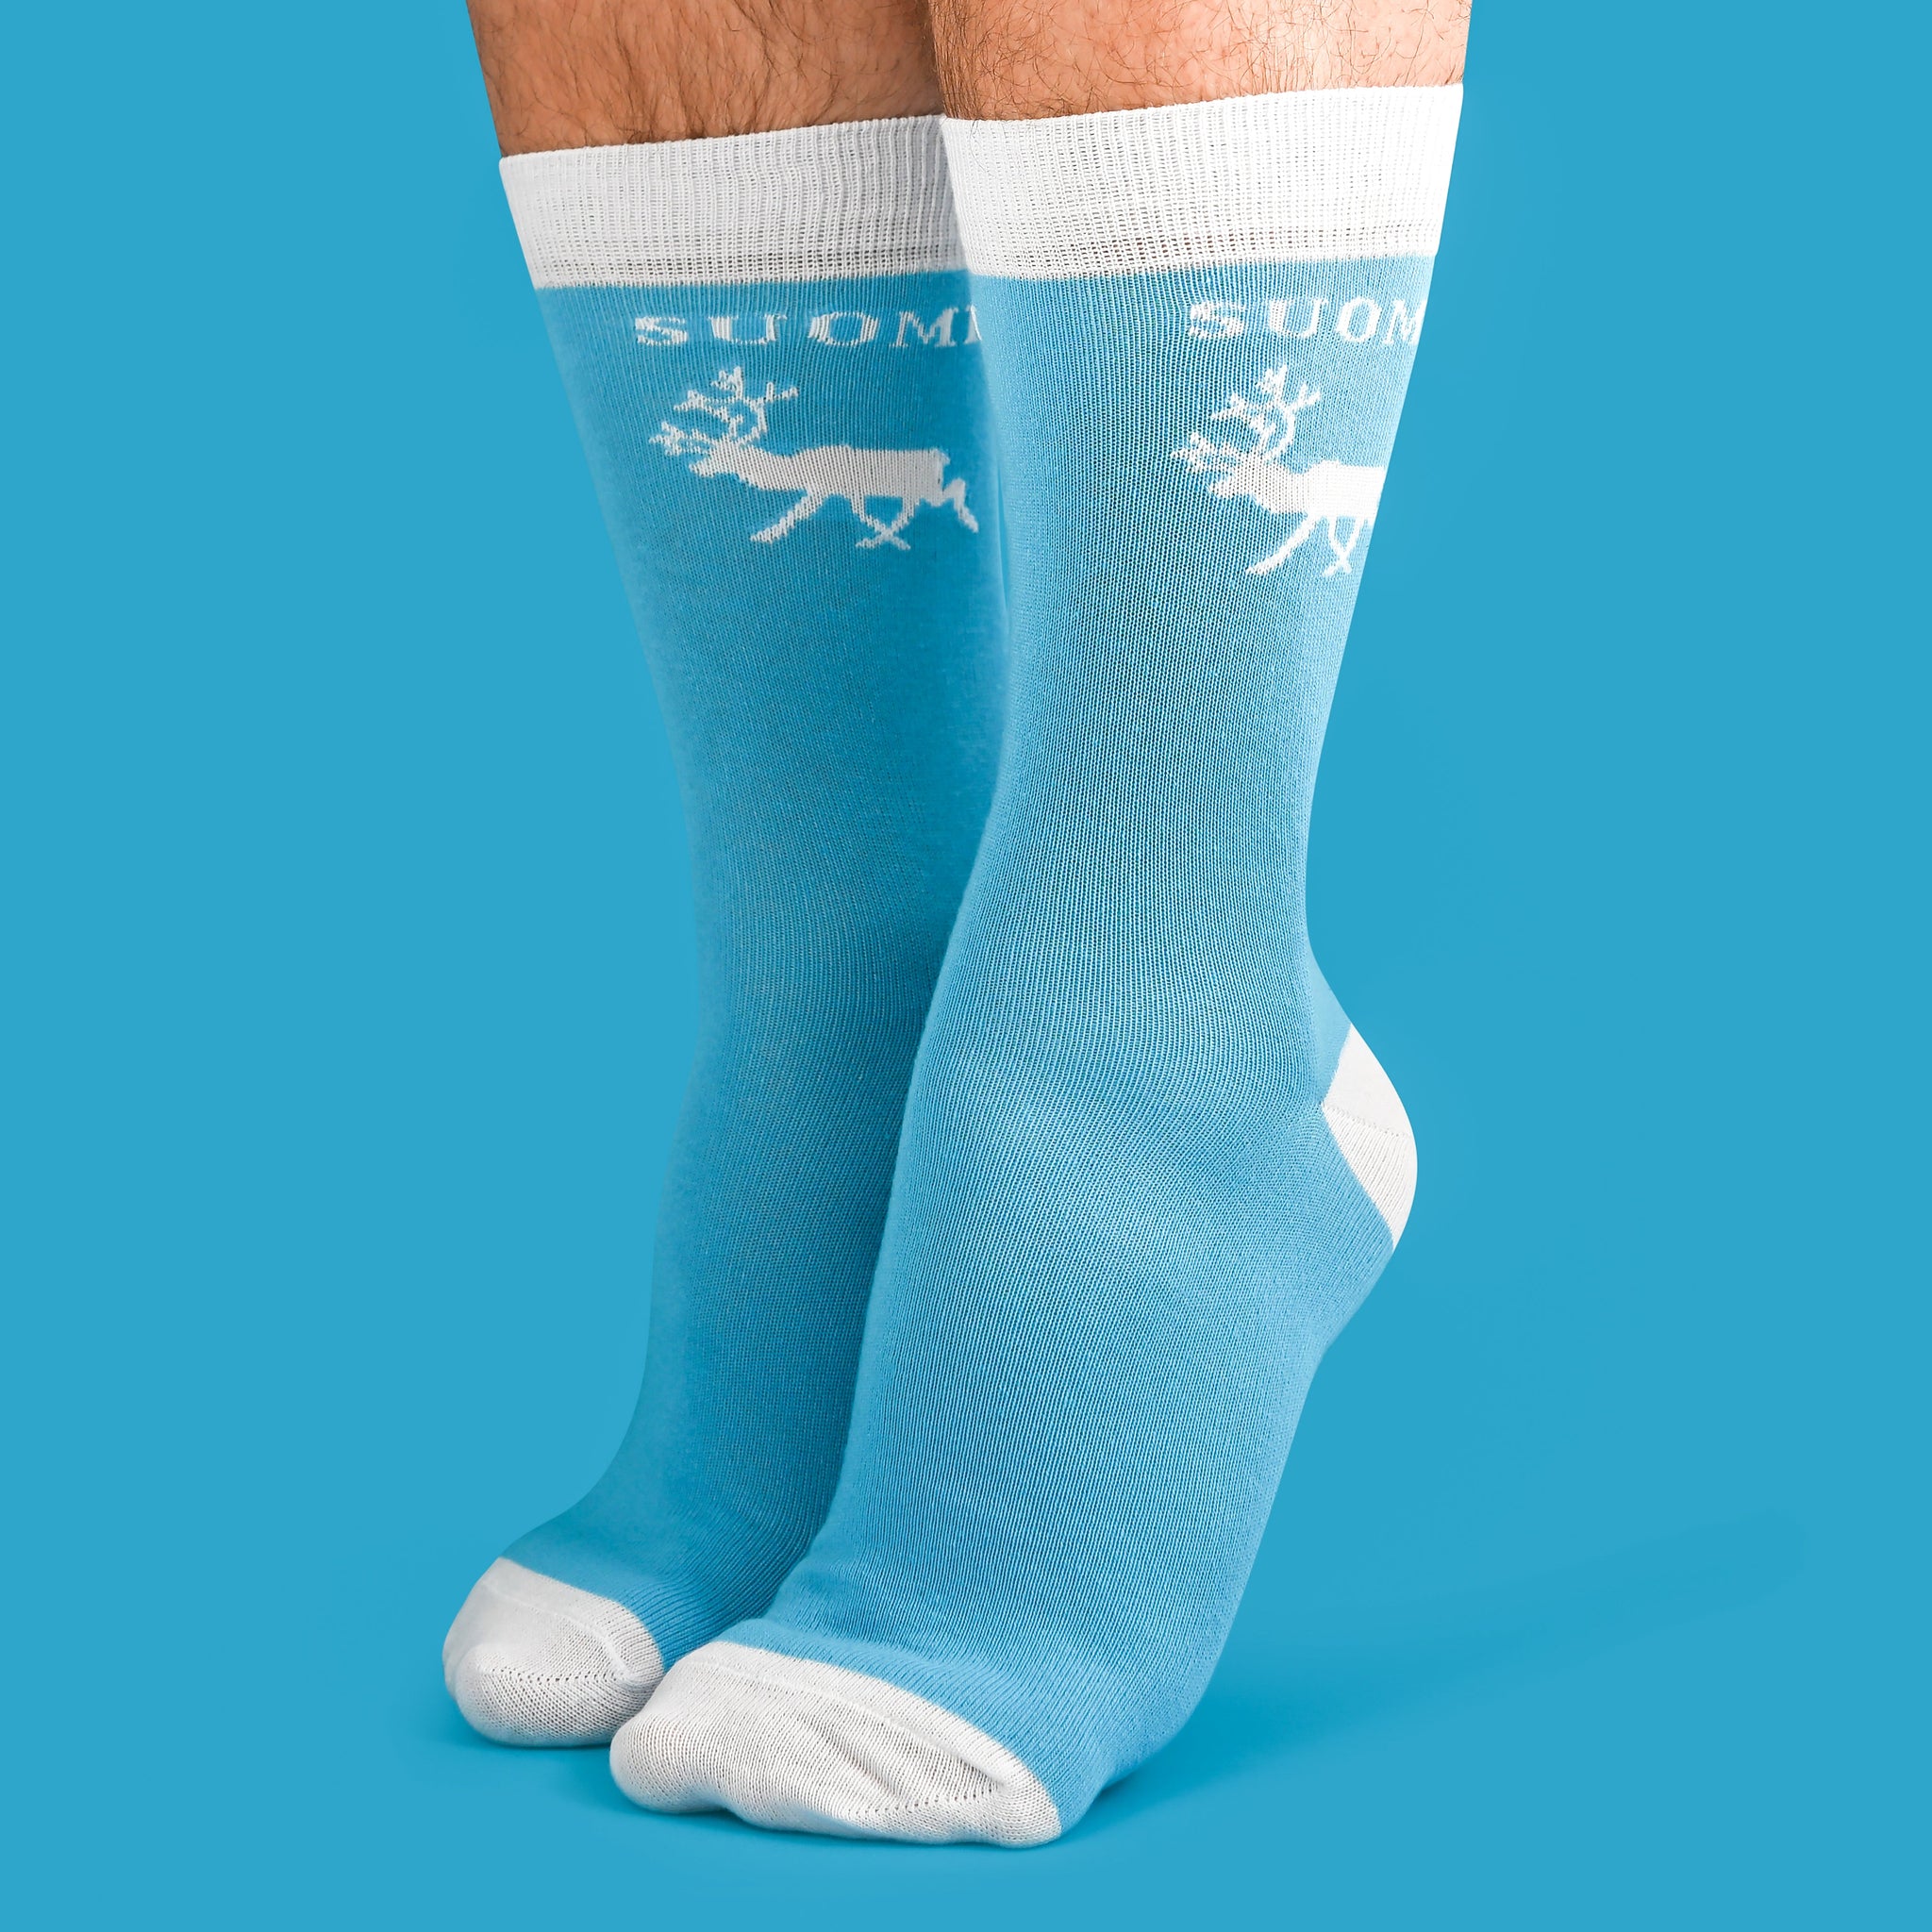 Finland Socks - Ren